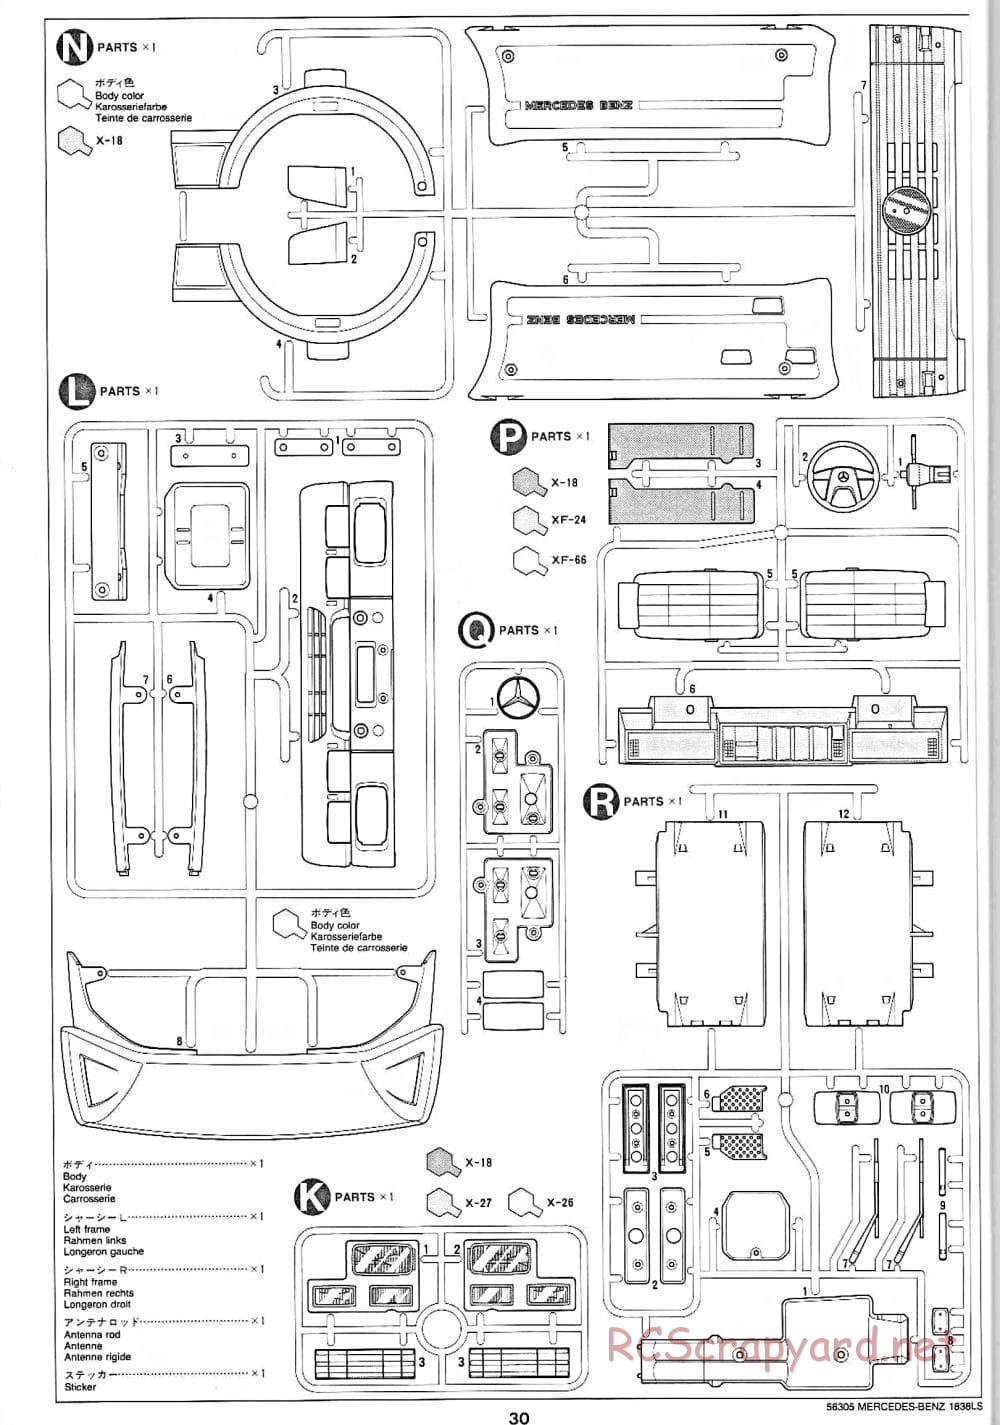 Tamiya - Mercedes-Benz 1838LS - Manual - Page 30